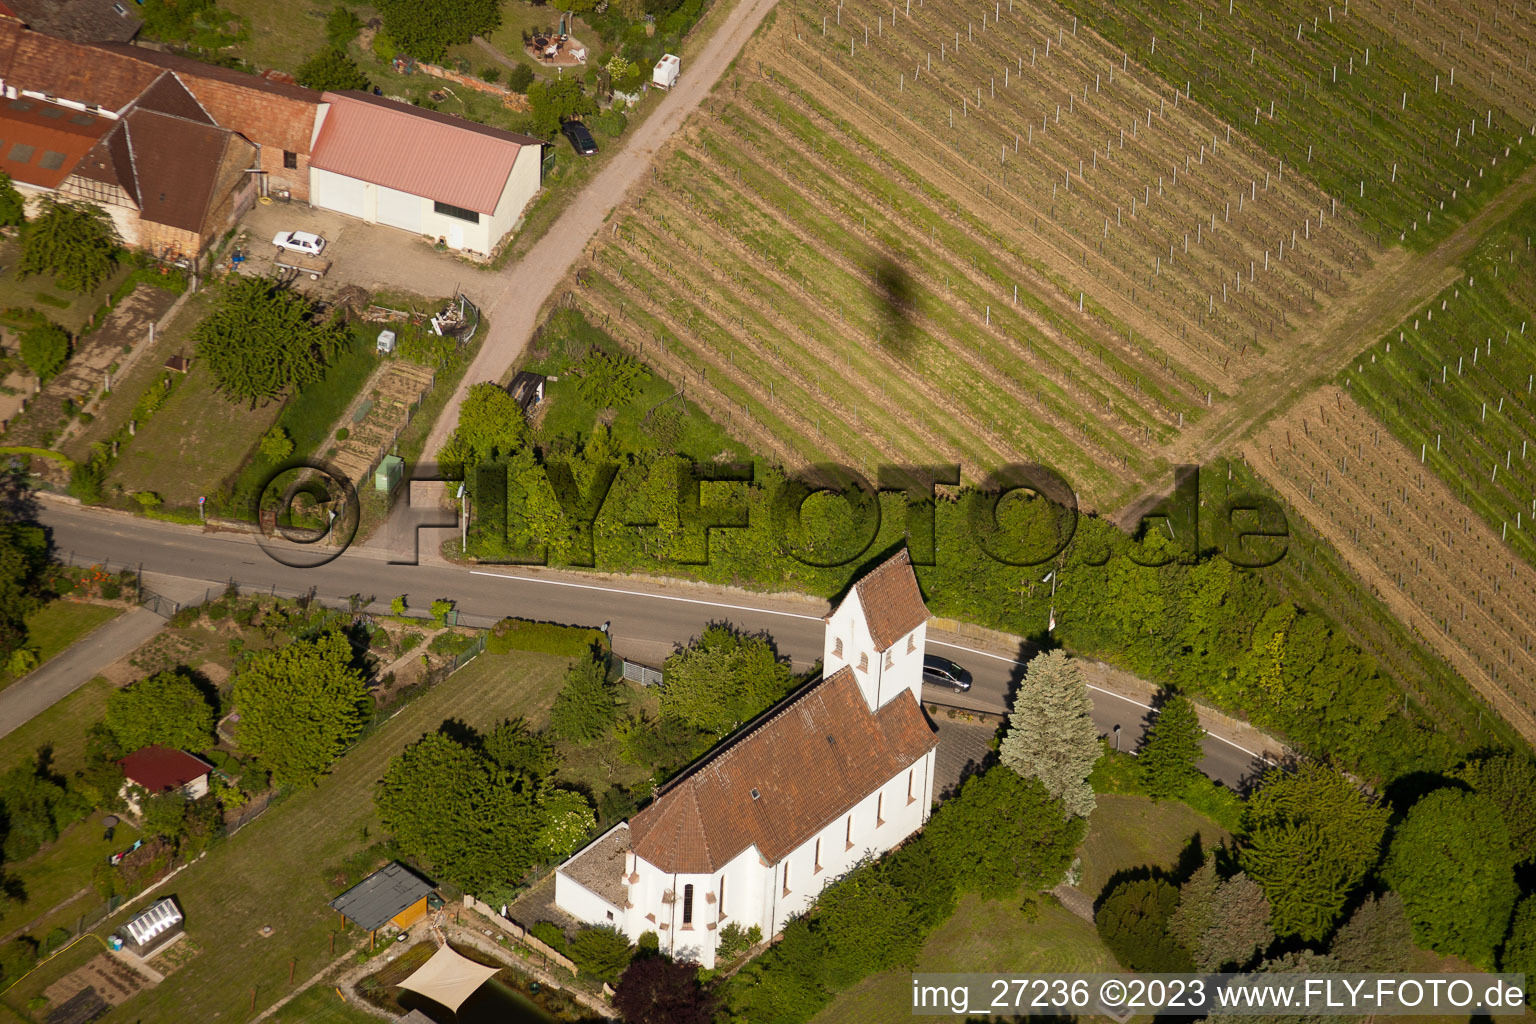 Drone recording of District Mörzheim in Landau in der Pfalz in the state Rhineland-Palatinate, Germany